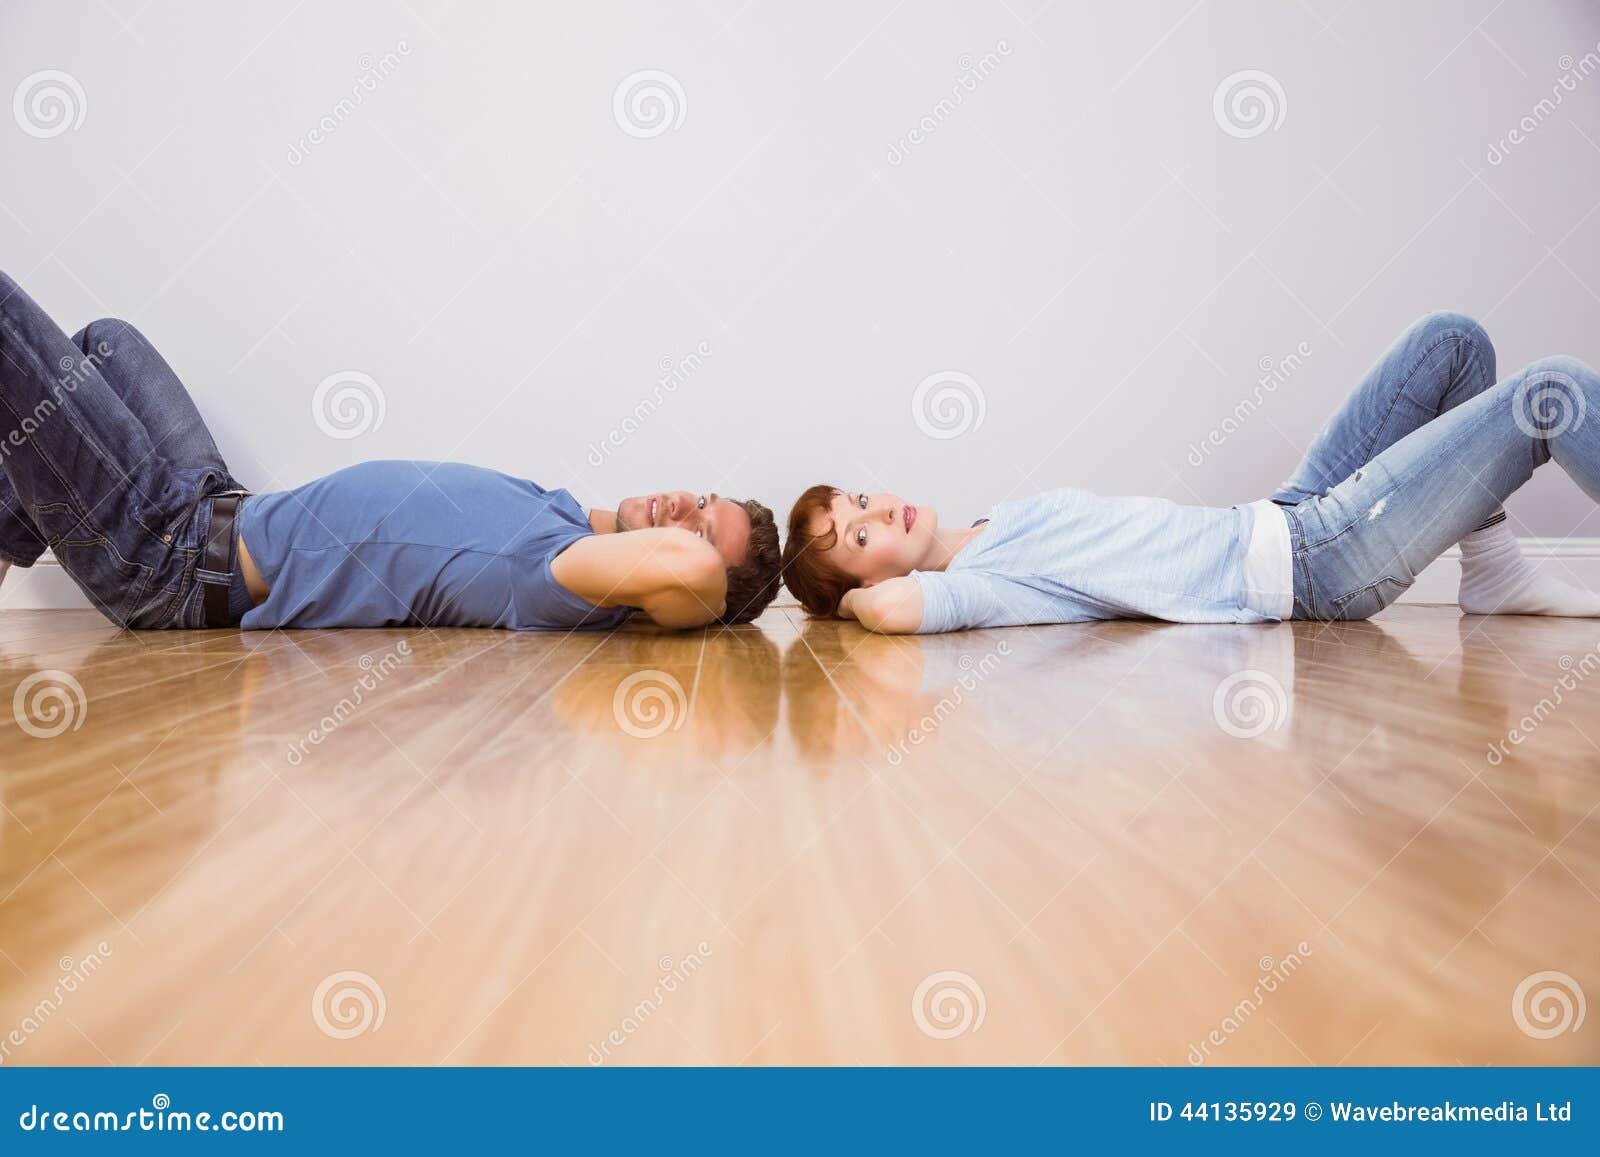 Звук падения на пол. Человек лежит на полу дома. Парень и девушка лежат на полу.